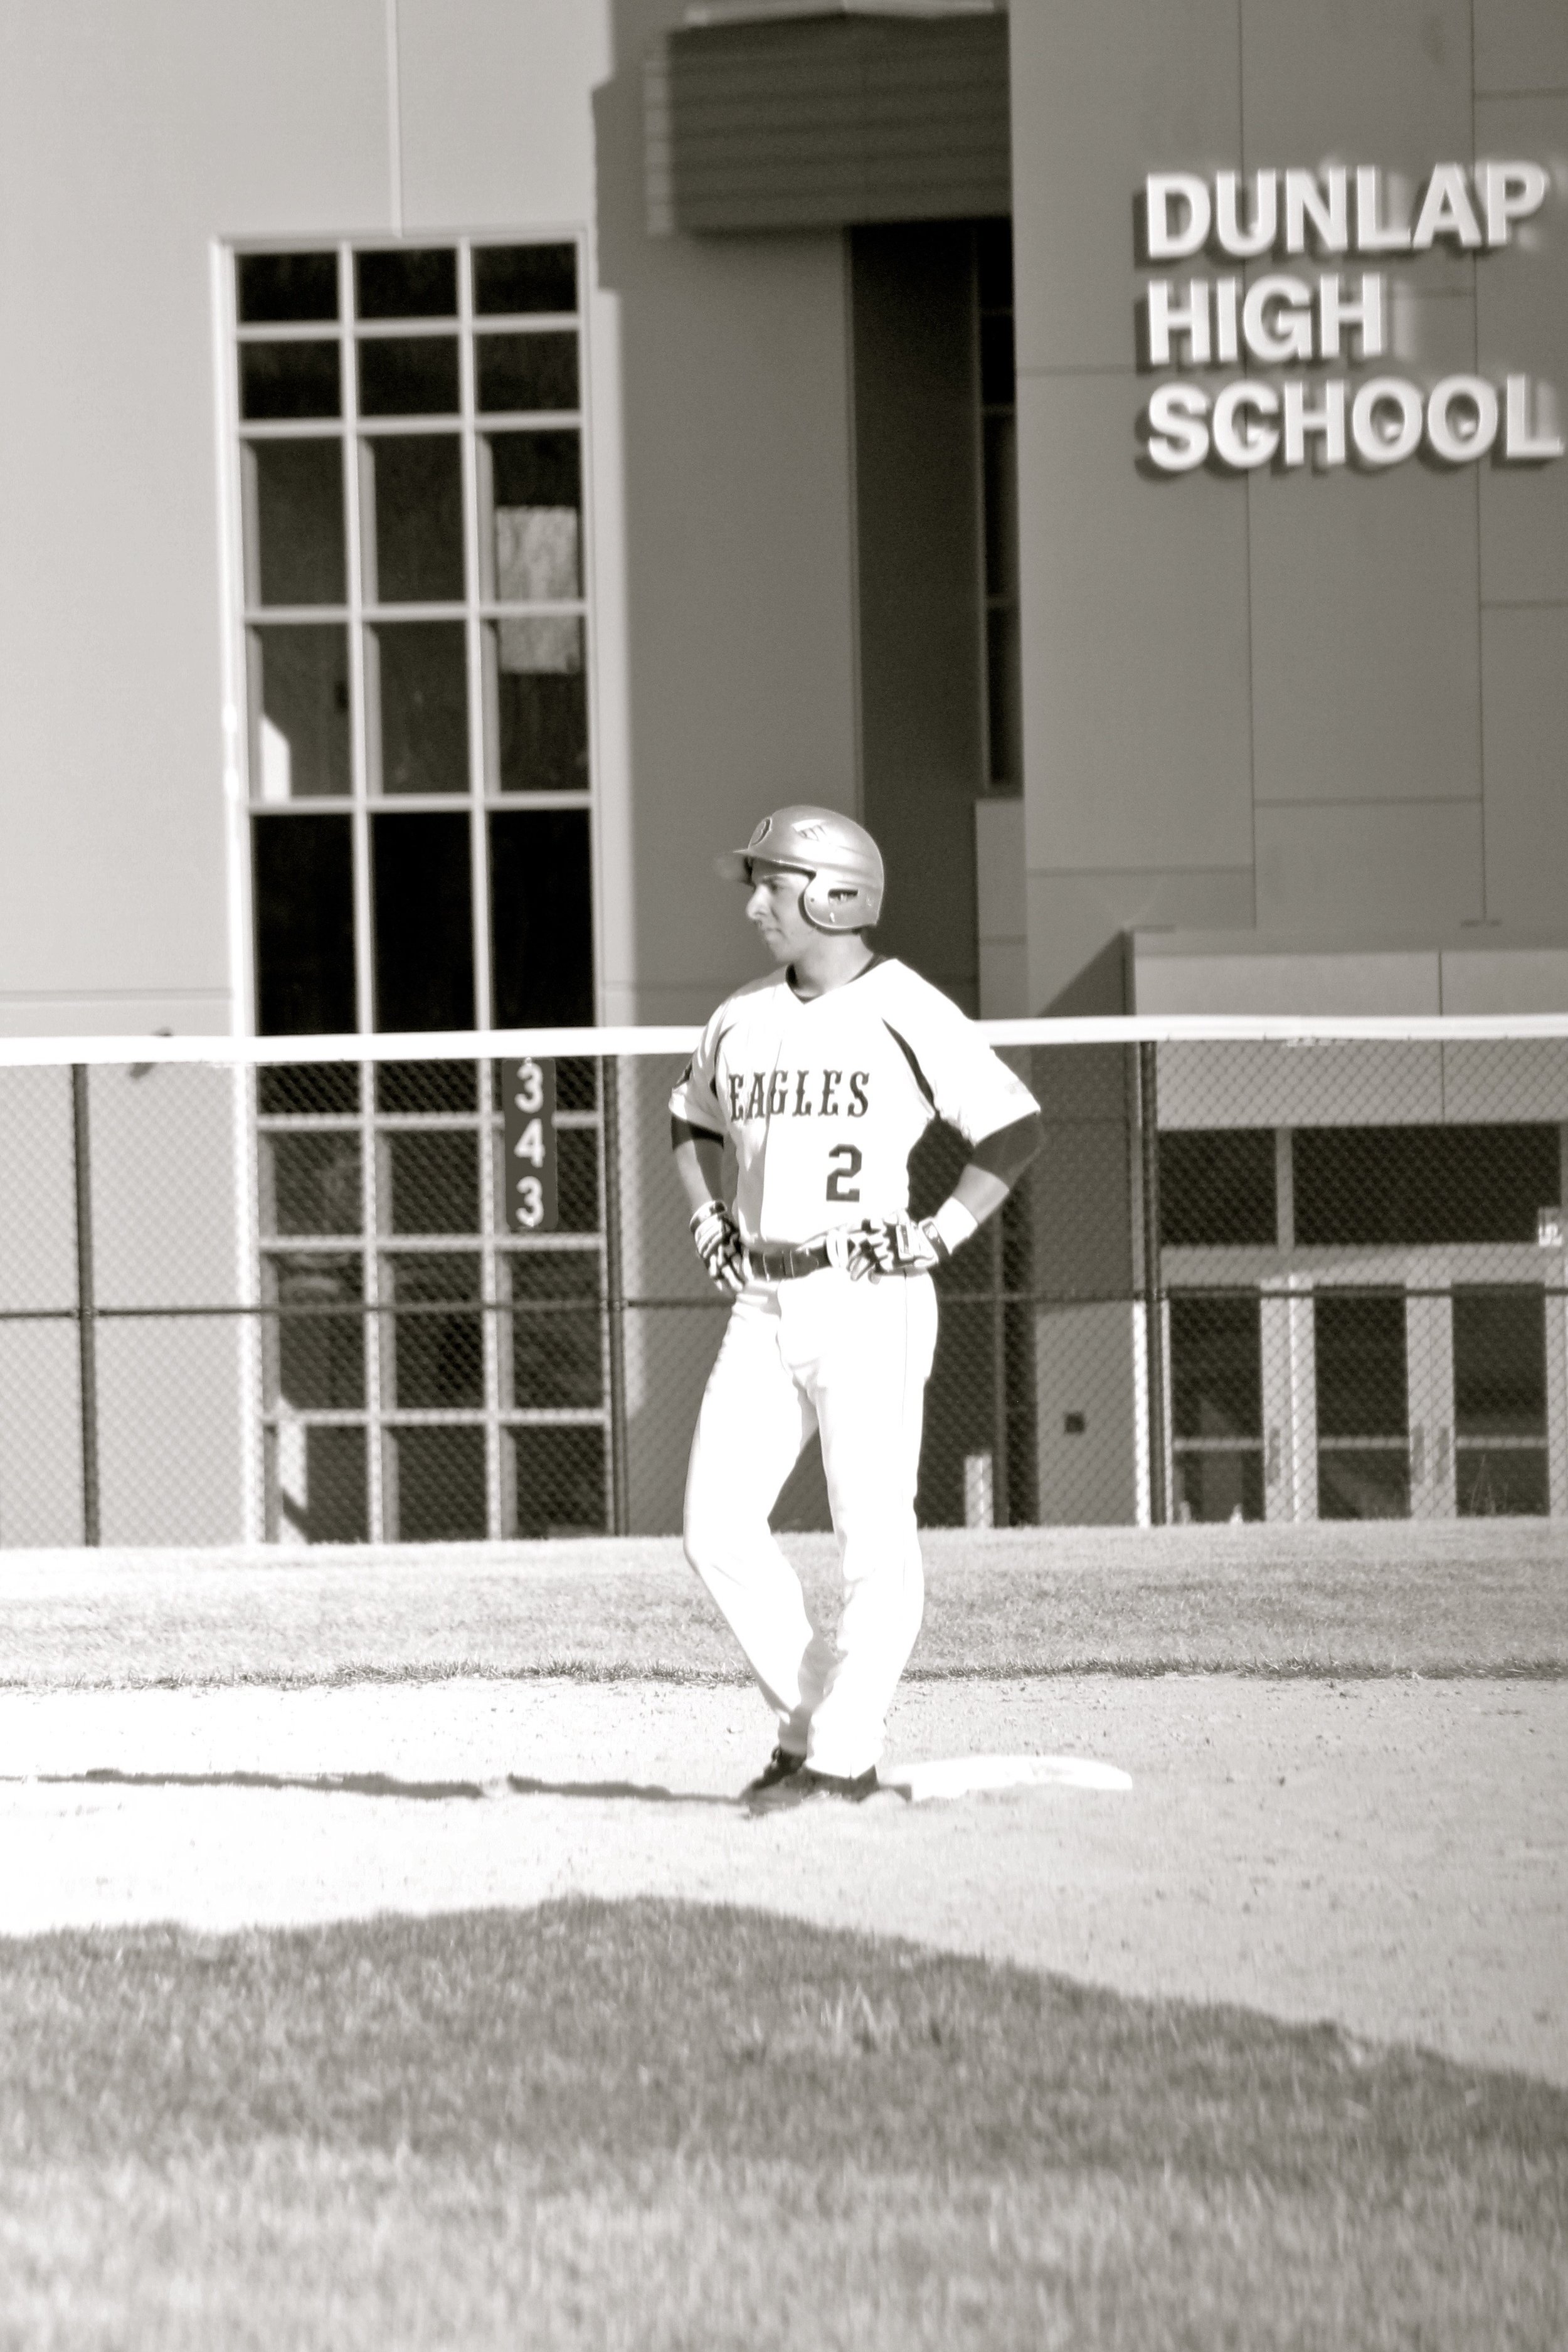 Nick-Dunlap-baseball-black-and-white.jpg